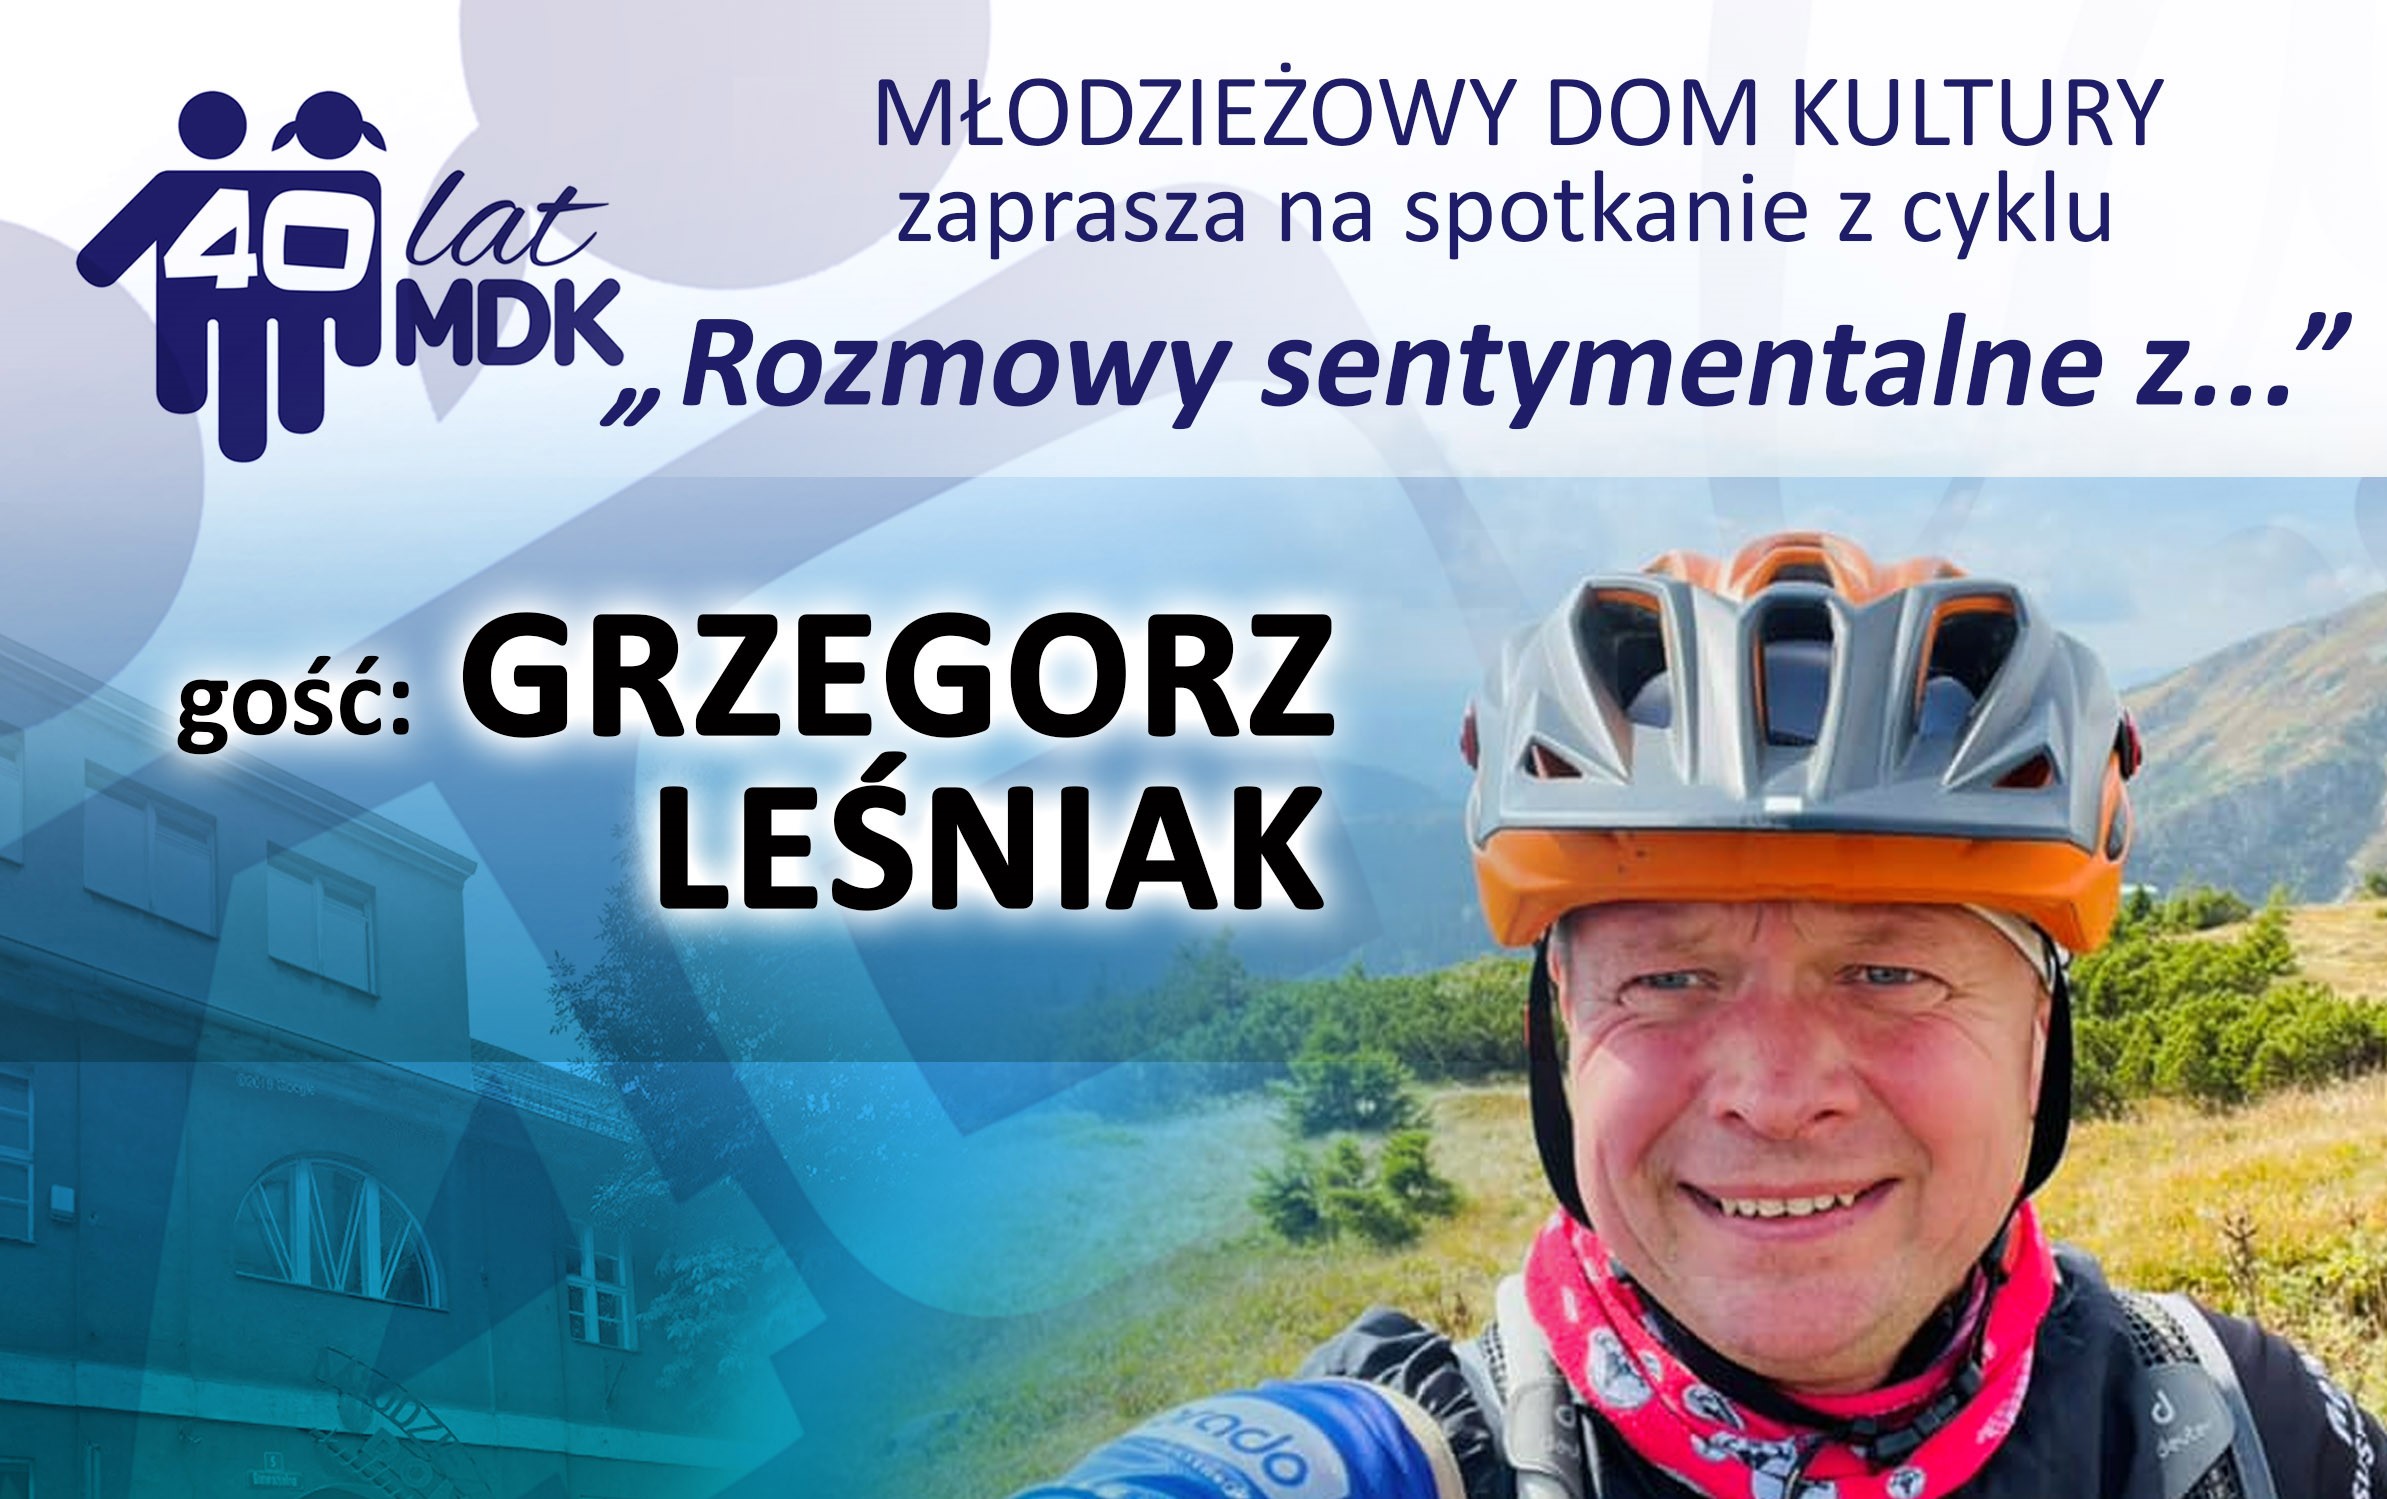 Kulturalnie i sportowo z Grzegorzem Leśniakiem